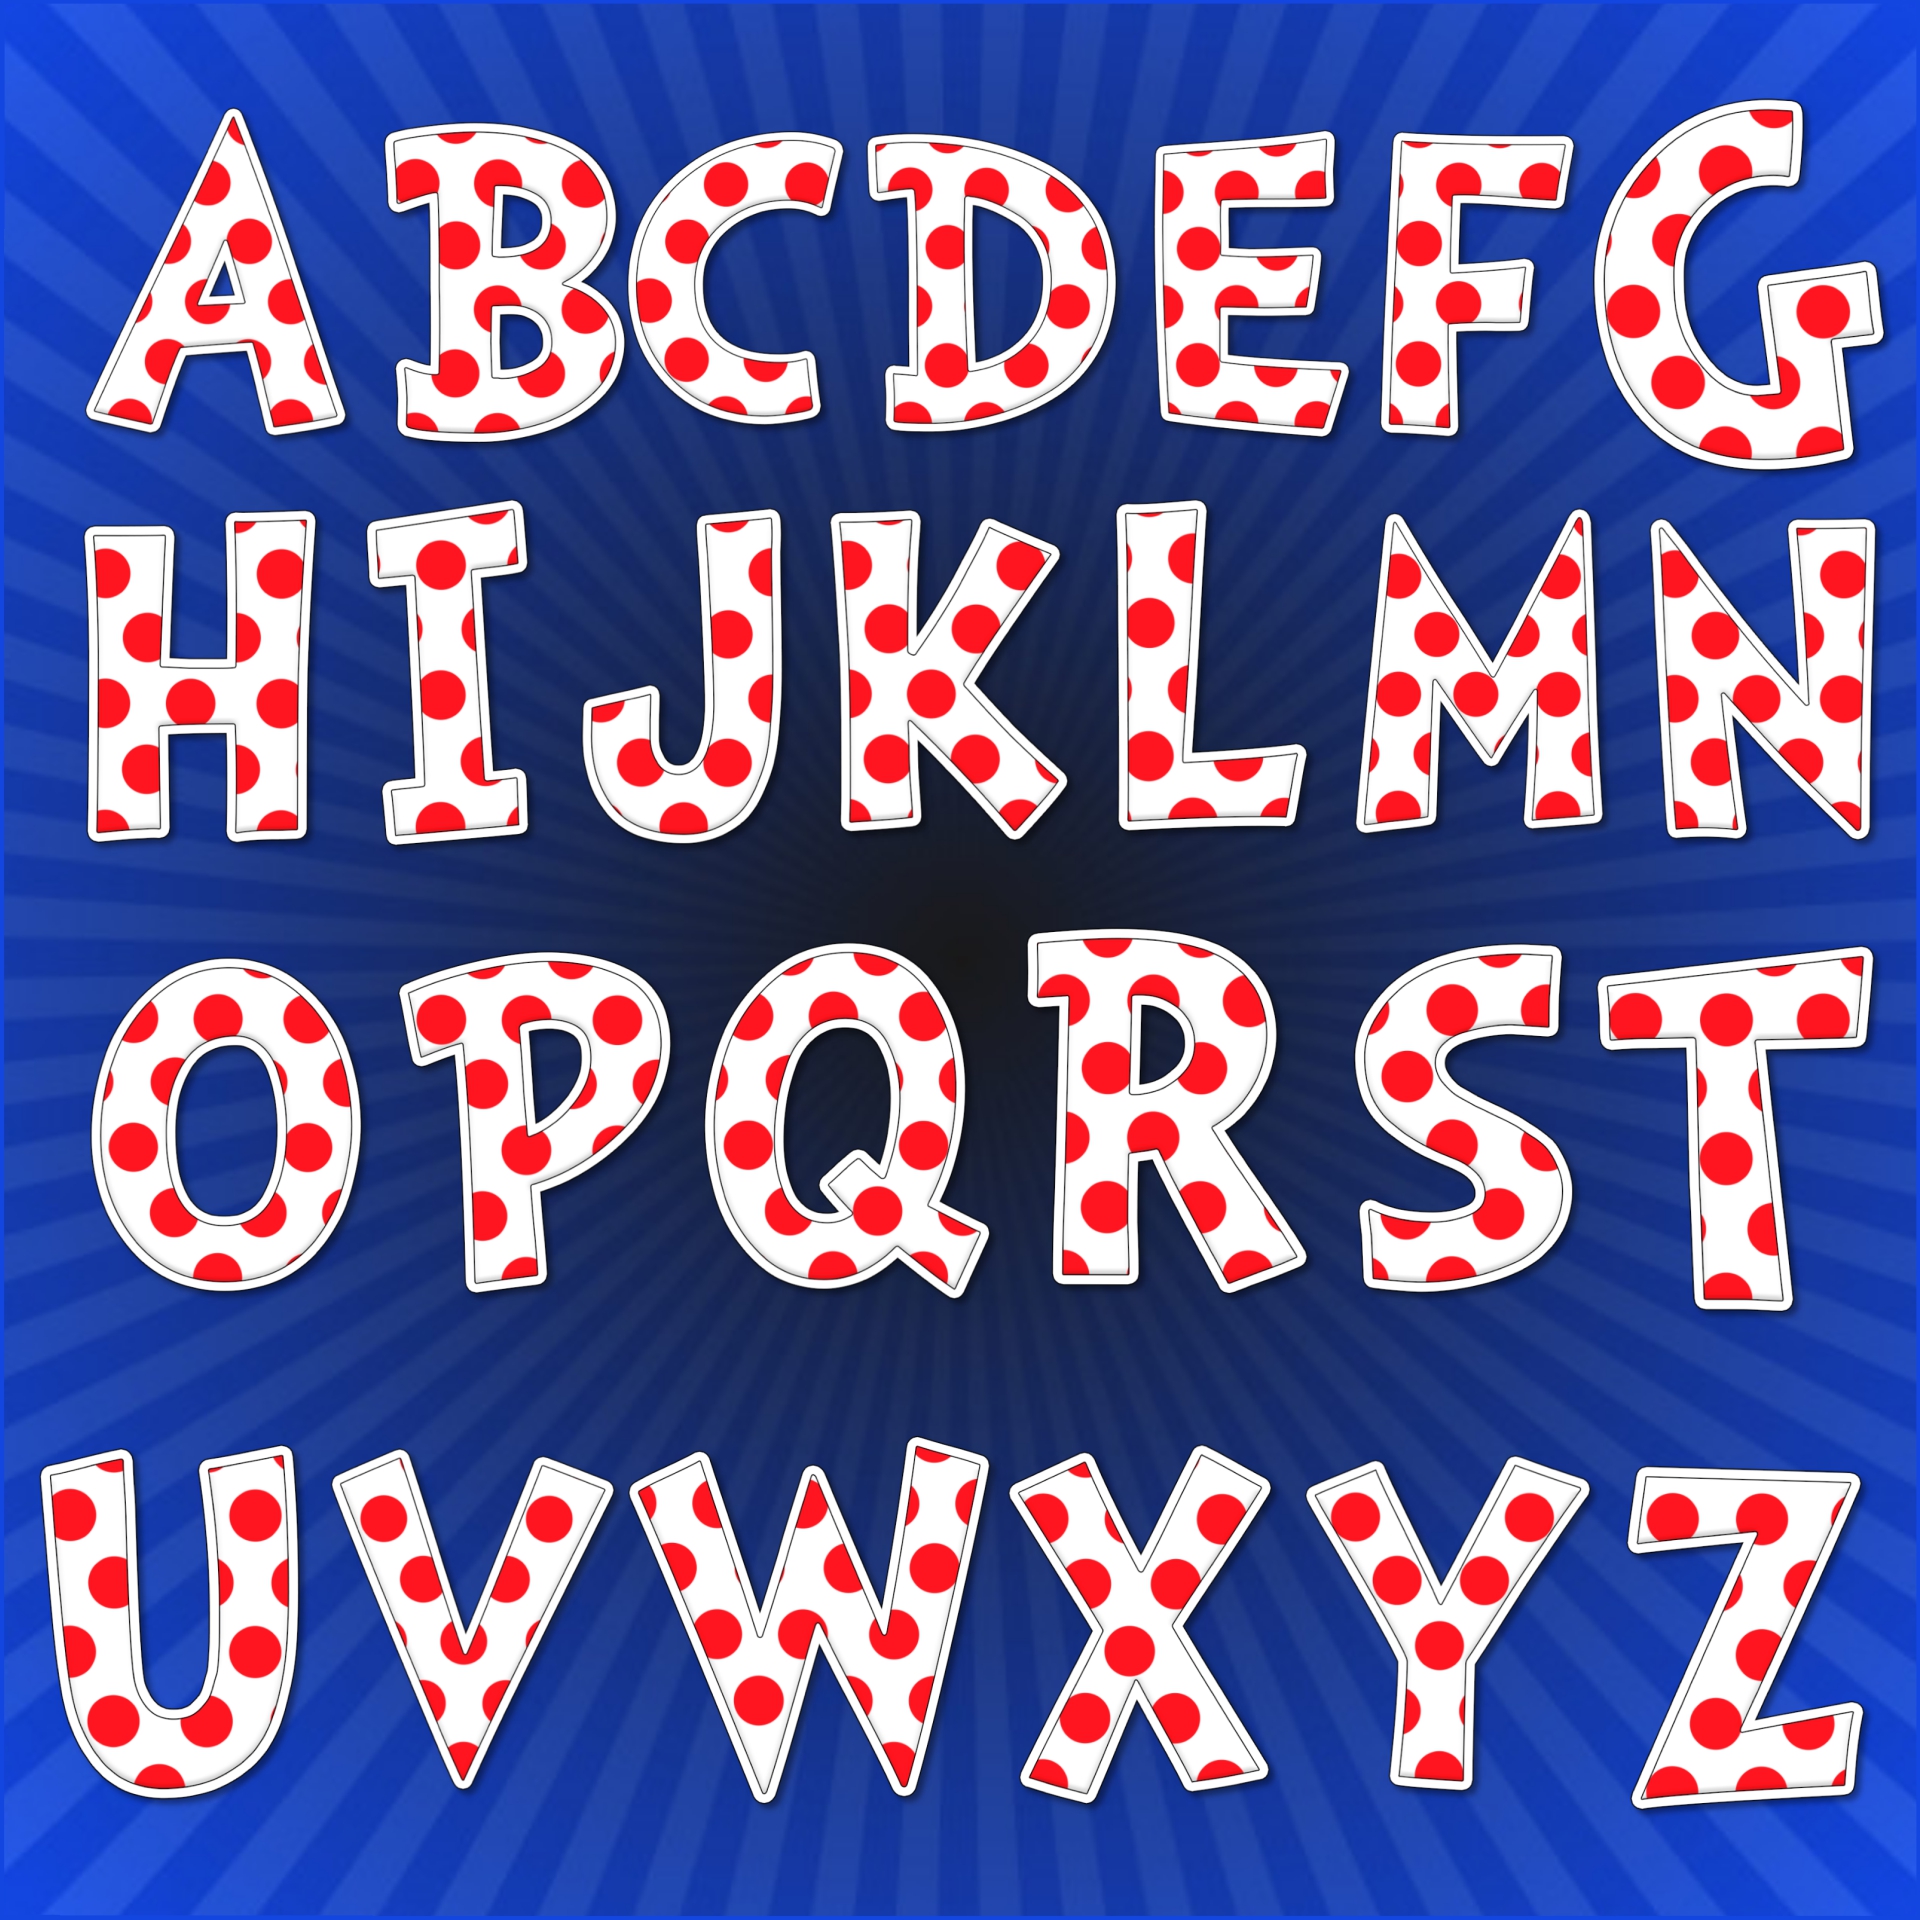 9 Best Images of Dr. Seuss Alphabet Printables Dr. Seuss ABC Alphabet